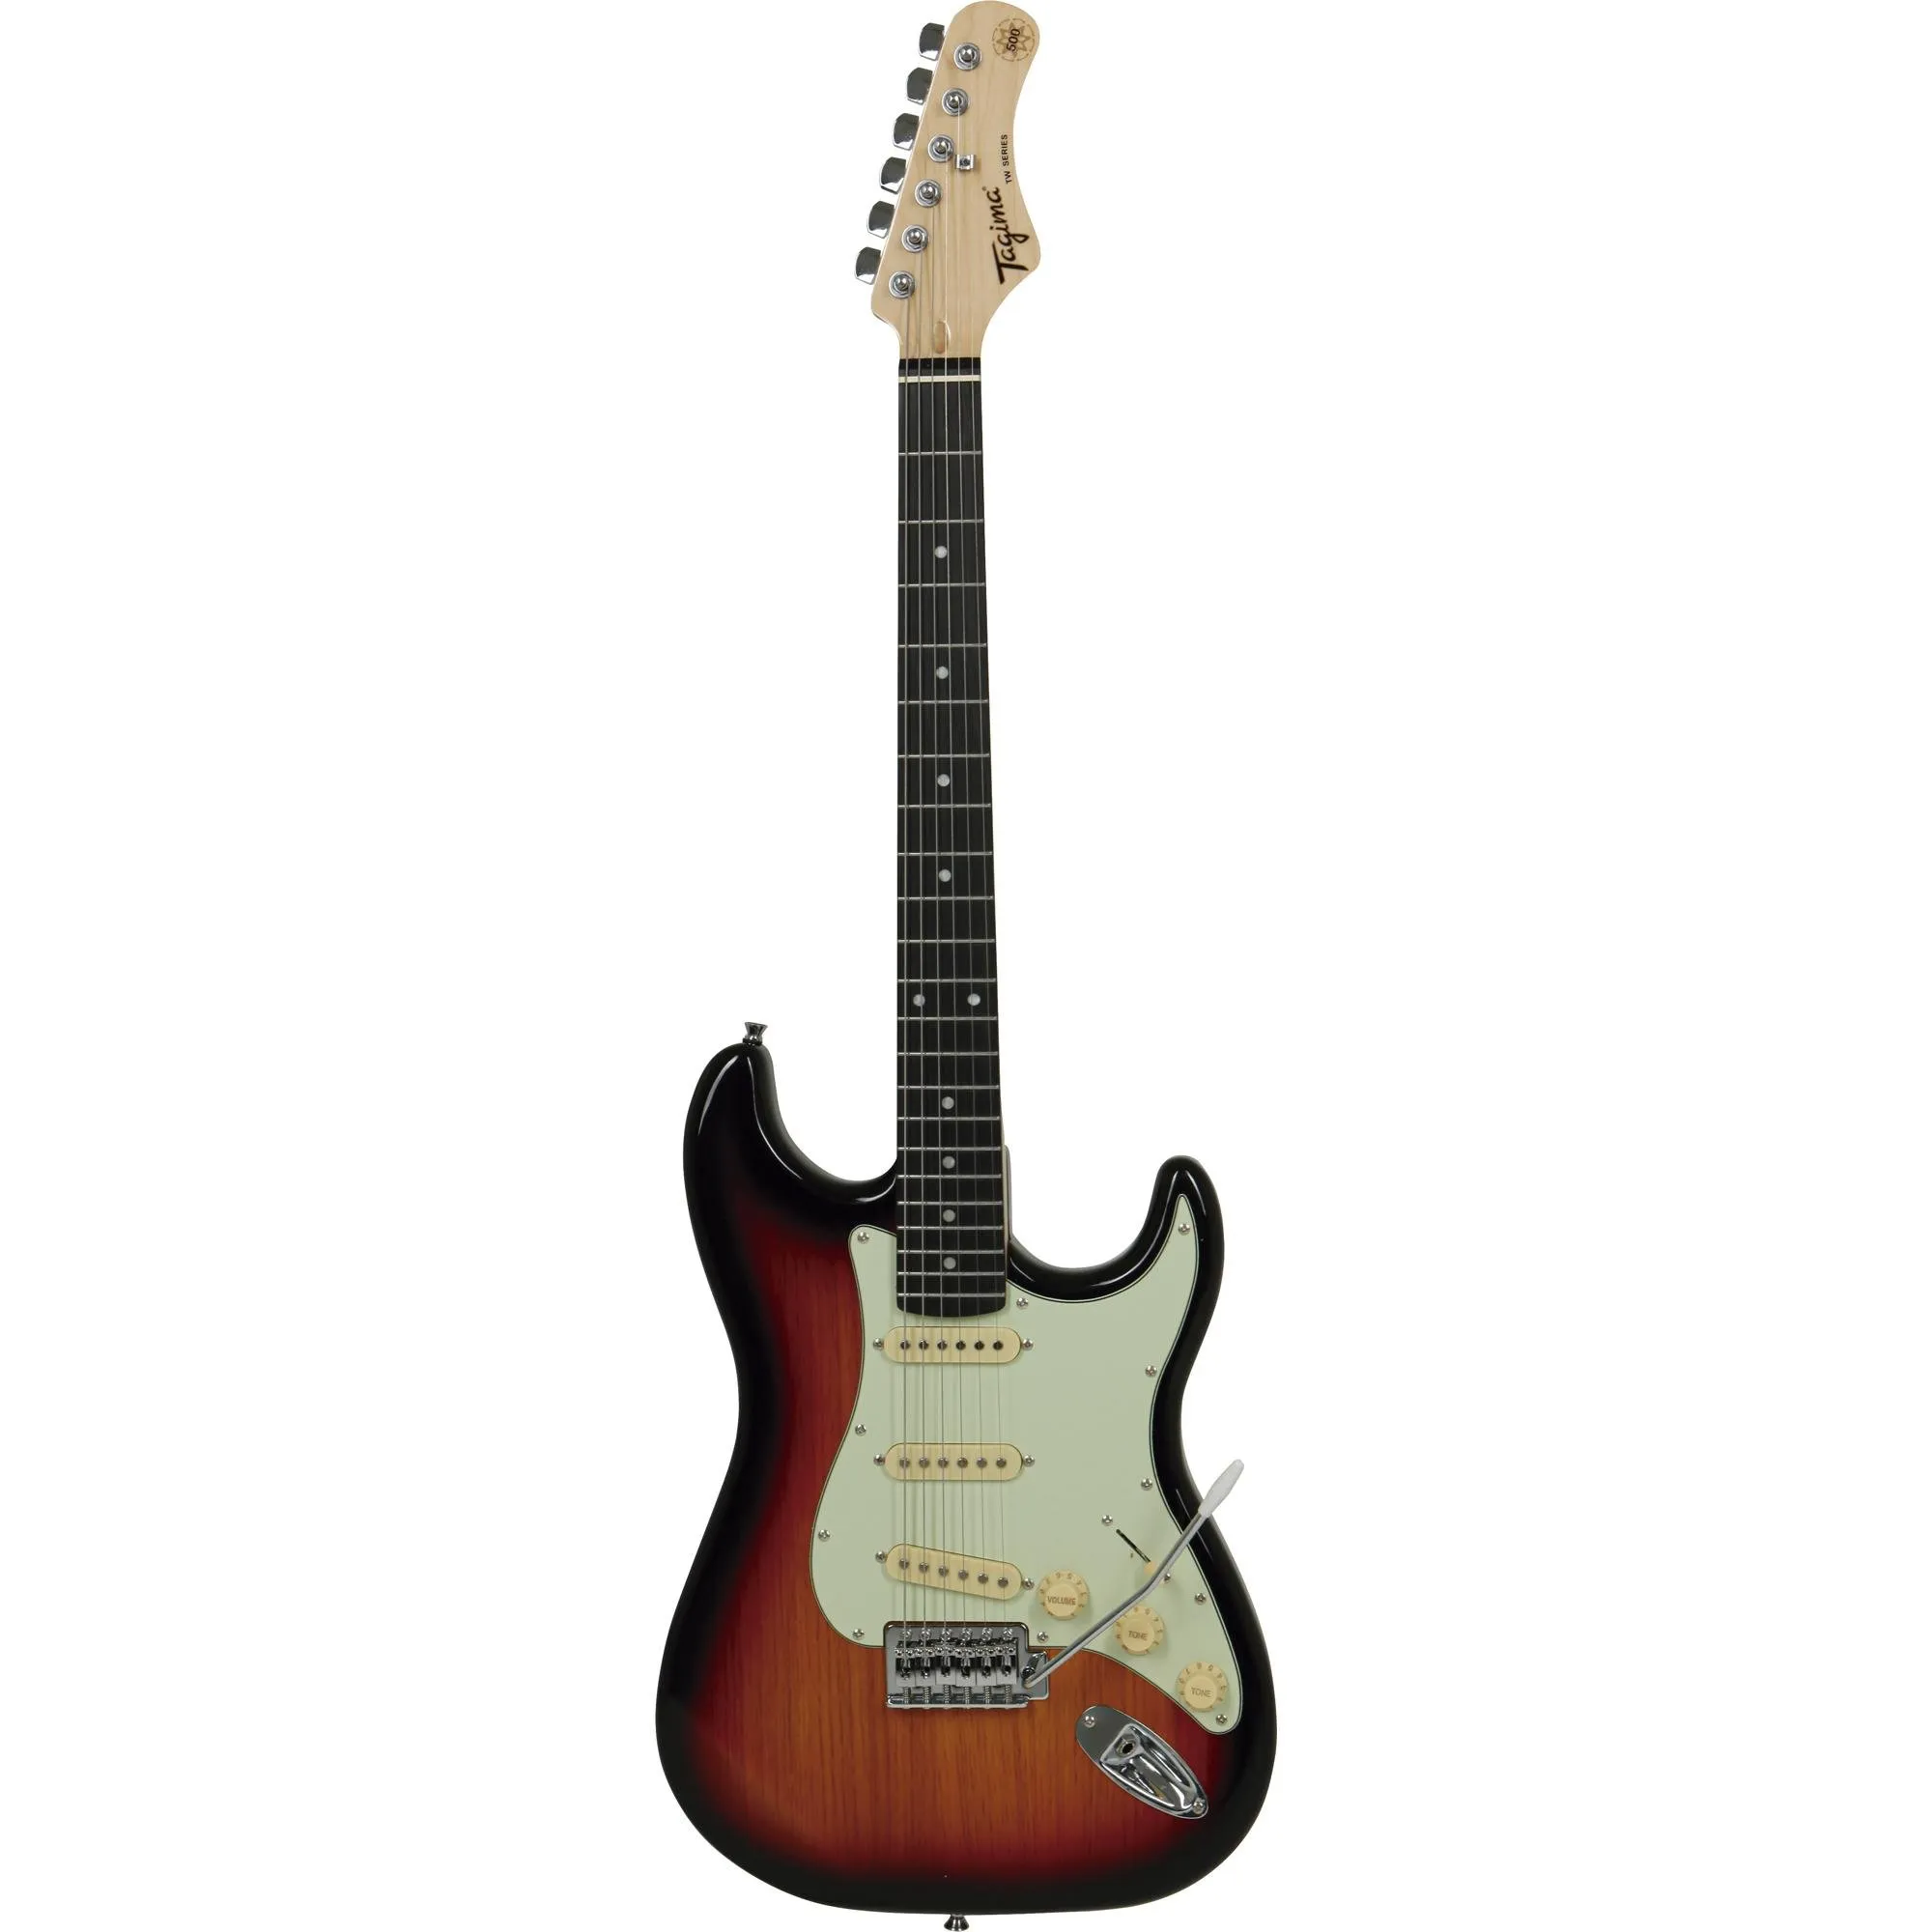 Guitarra Tagima TG-500 SB E/MG Sunburst por 999,99 à vista no boleto/pix ou parcele em até 10x sem juros. Compre na loja Mundomax!